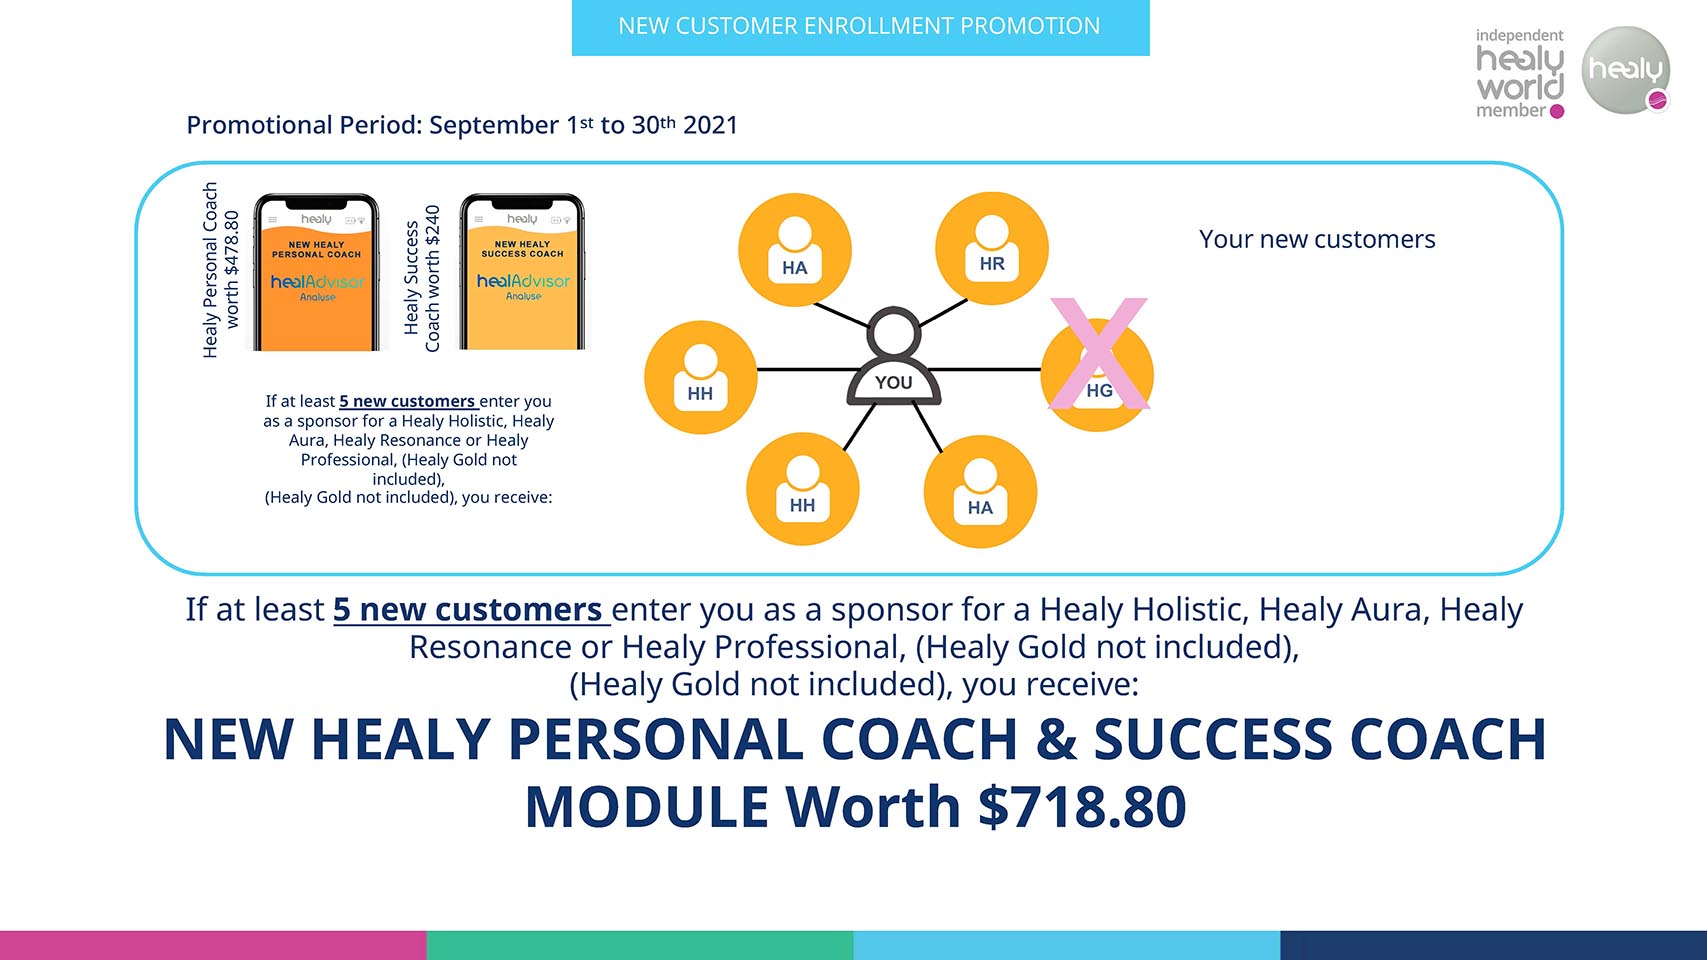 healy success coach personla coach module 718 promotion